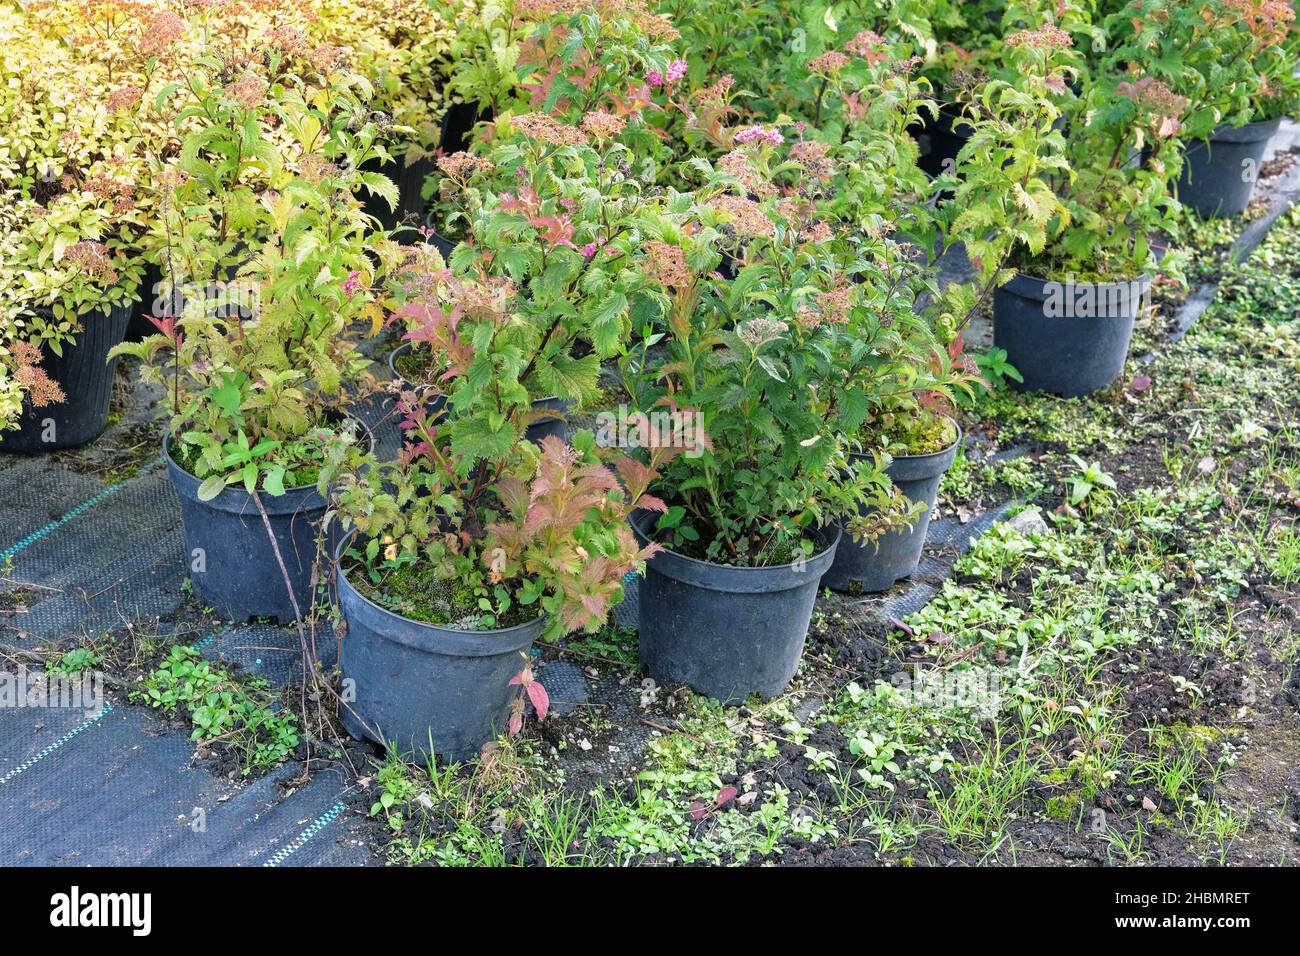 Negozio in giardino. Piantine di piante diverse in pentole in deposito giardino. Vivaio di piante per giardinaggio. Foto Stock